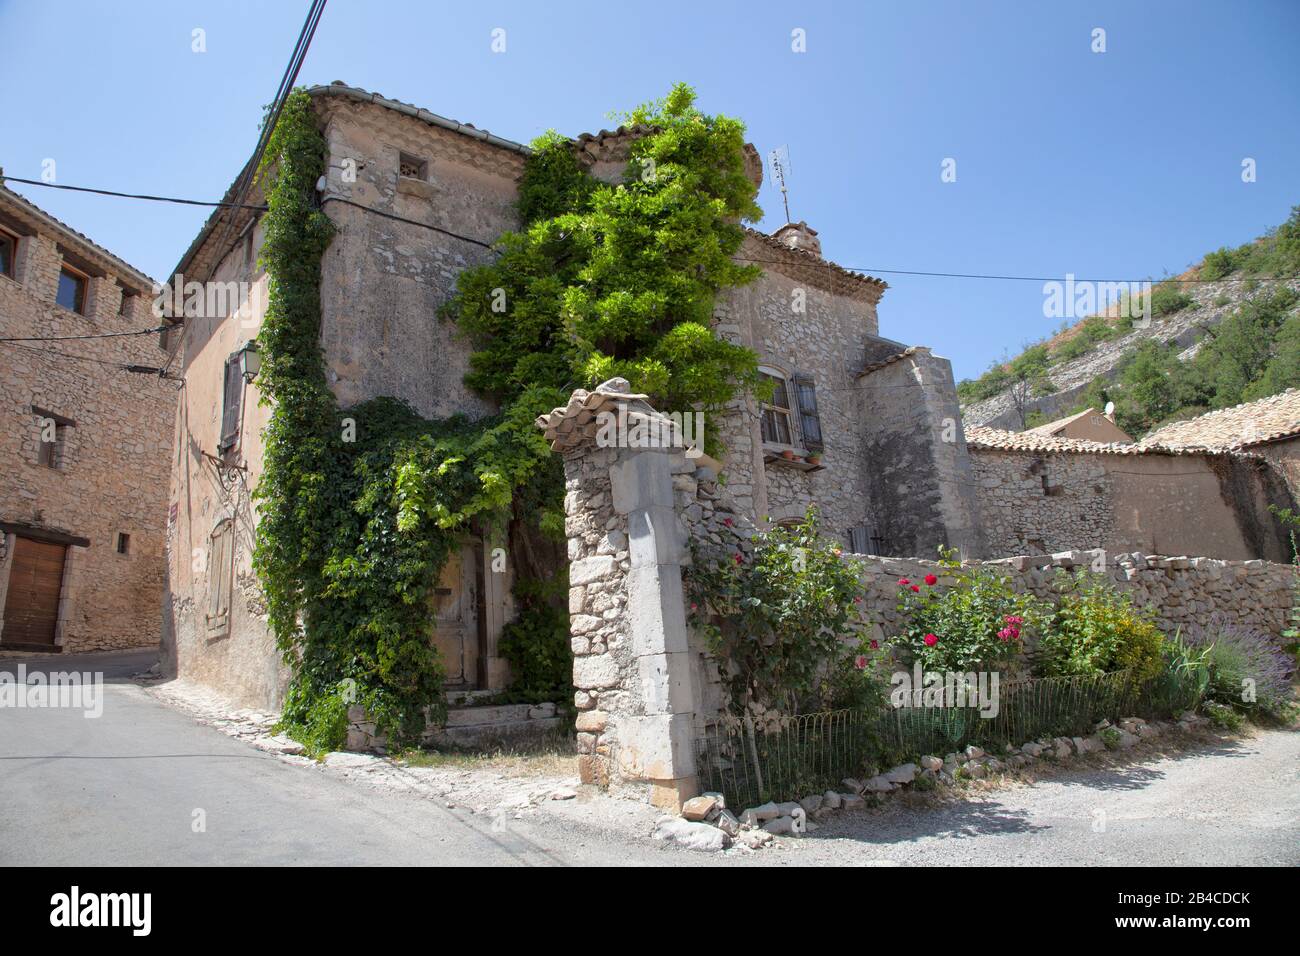 Destination estivale pittoresque avec maison historique avec des plantes grimpantes dans le petit village de Provence, au sud de la France Banque D'Images